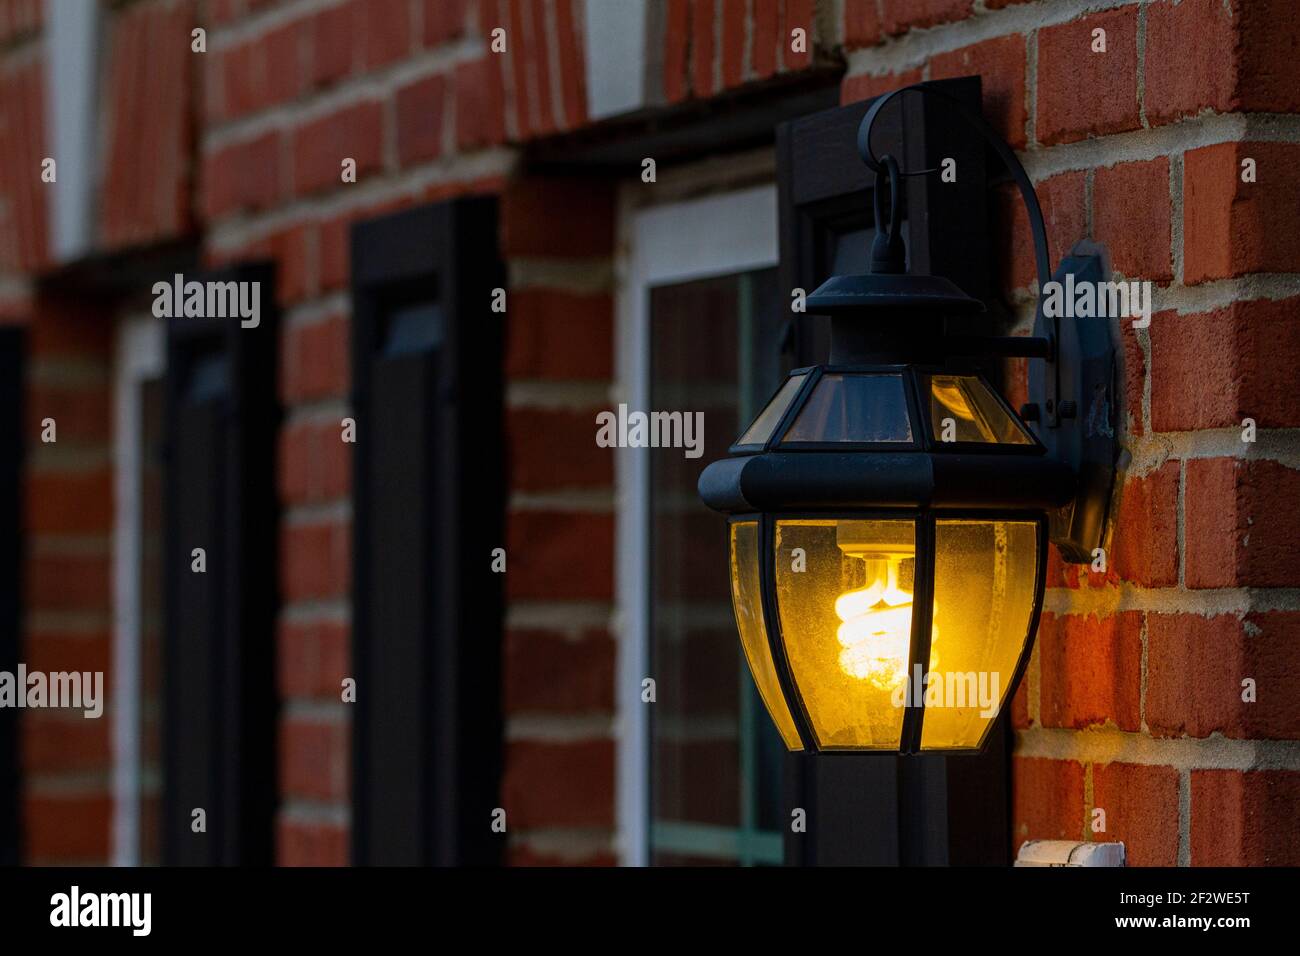 Ampoule fluorescente compacte en spirale luminescent. L'ampoule se trouve à l'intérieur d'une lanterne murale en métal fixée au mur de briques de l'extérieur d'une maison Banque D'Images